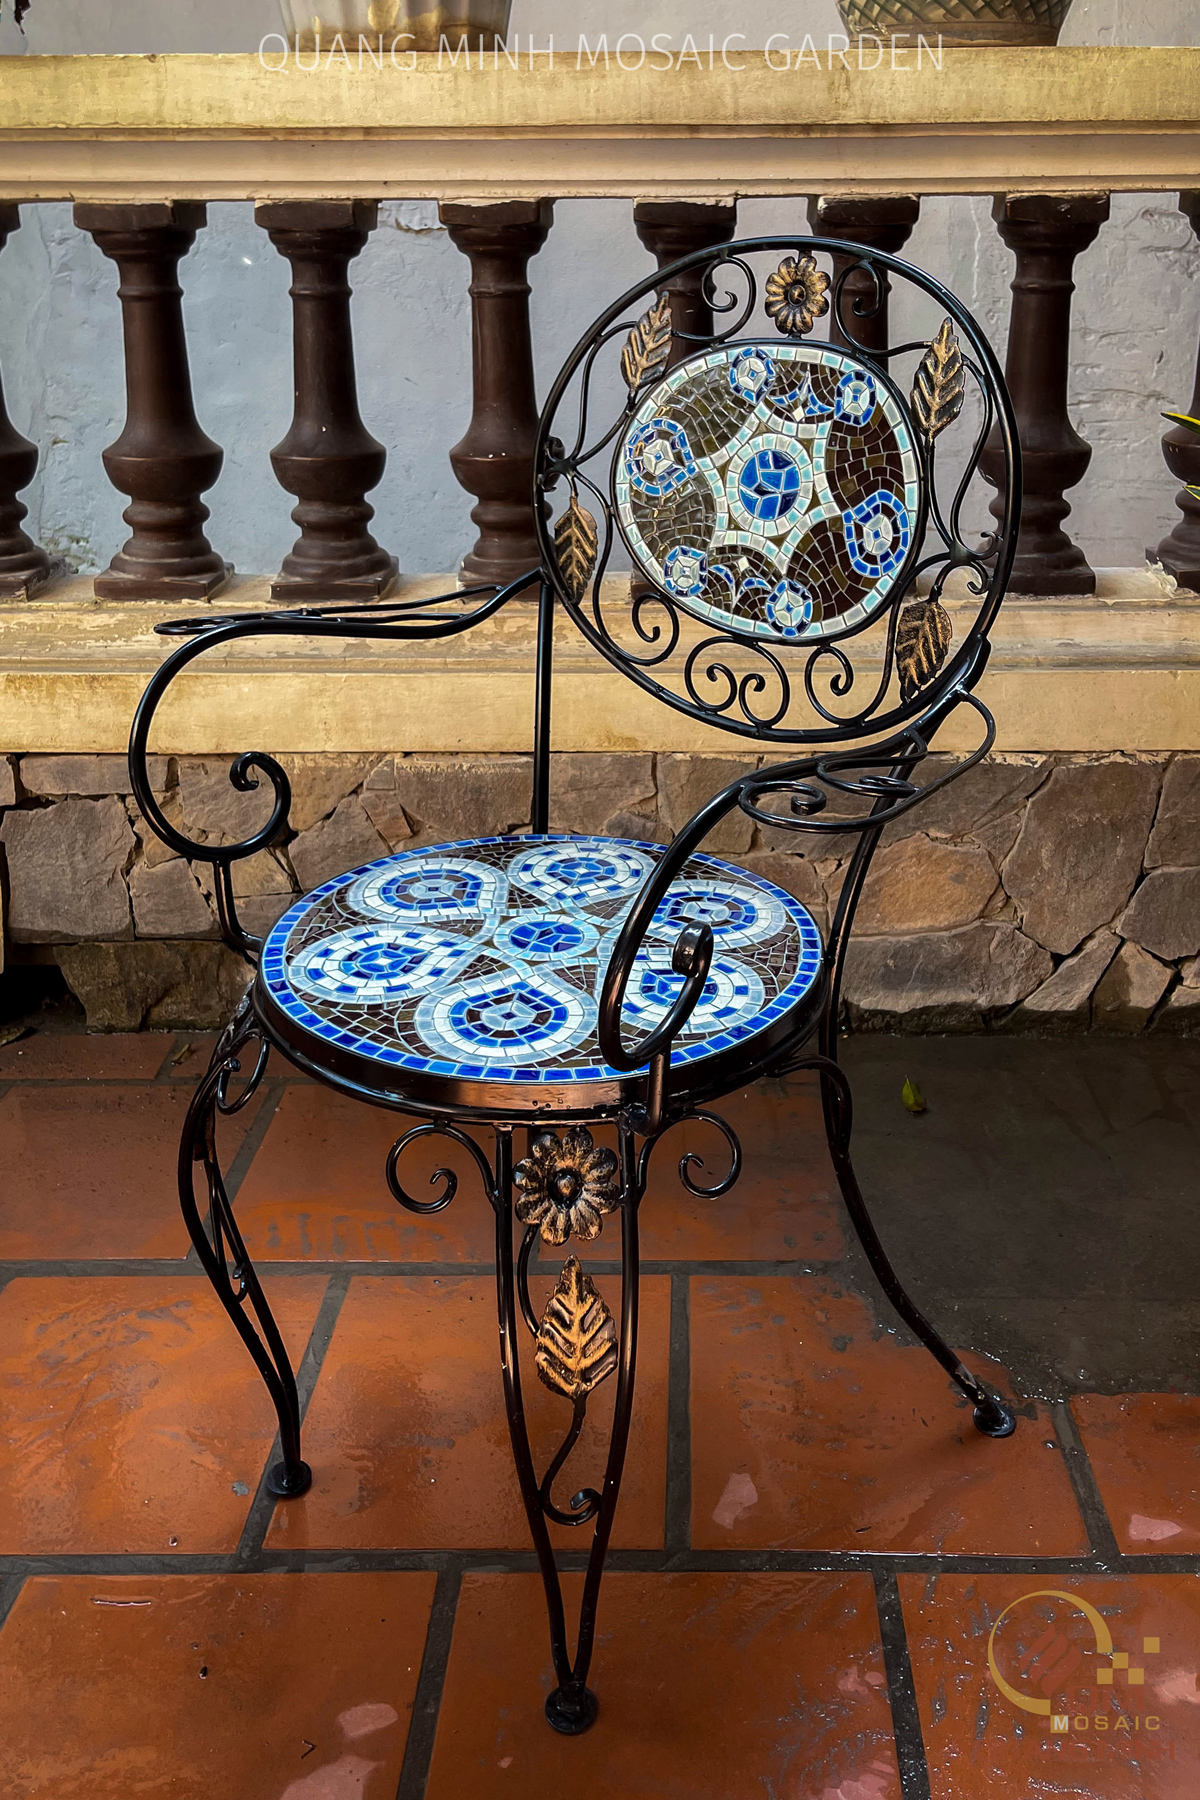 Bộ bàn ghế sân vườn khung sắt Mosaic gốm Hoa Sao QM-BD06